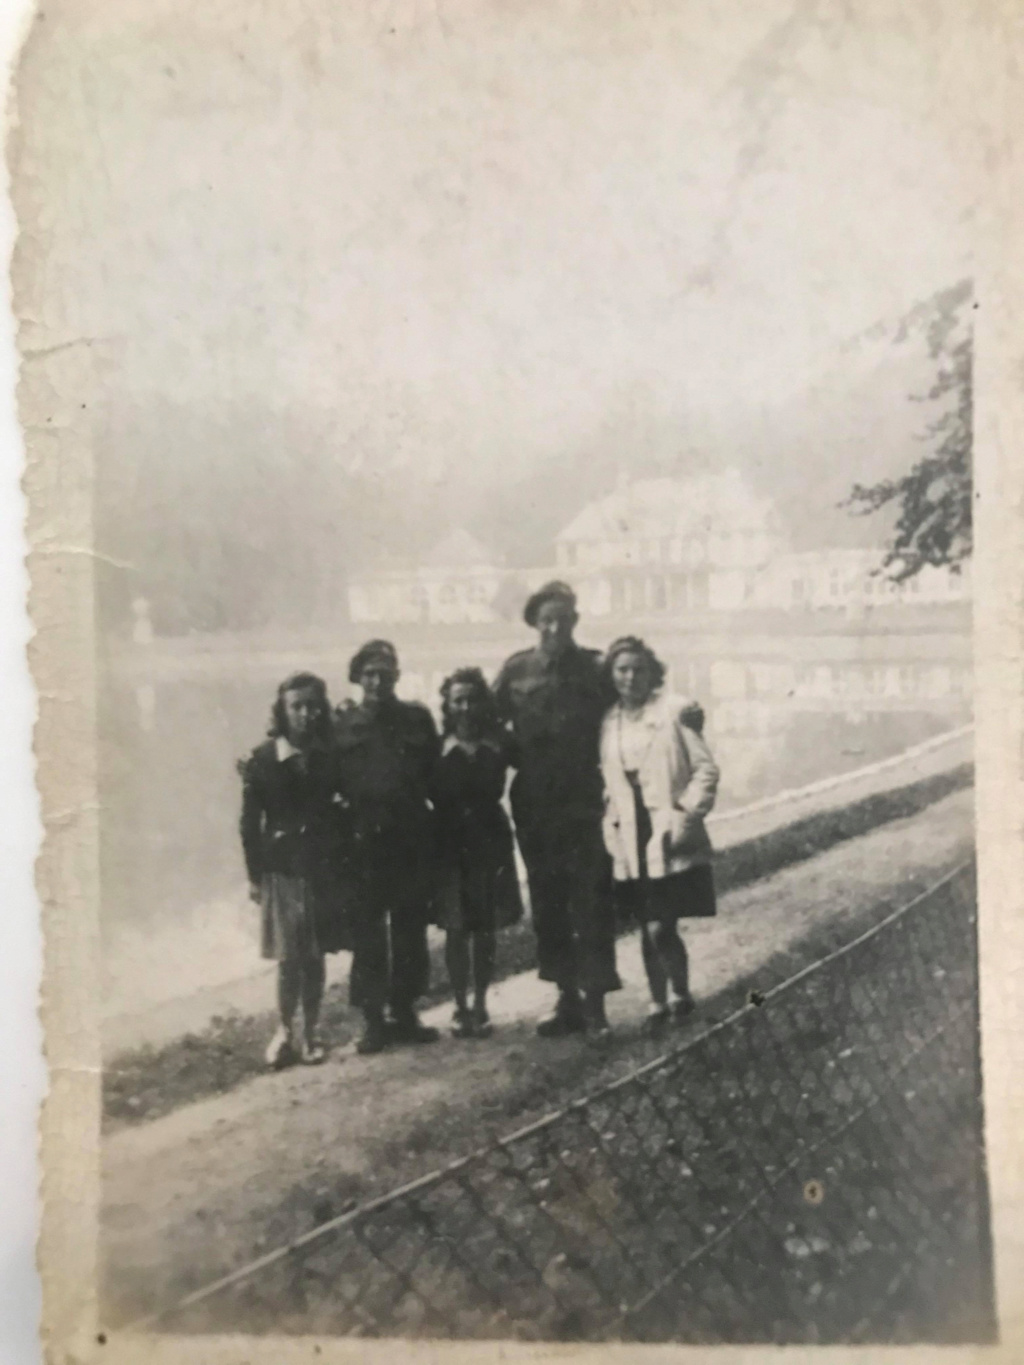 Mon grand-père et la guerre - Page 2 1b88f910